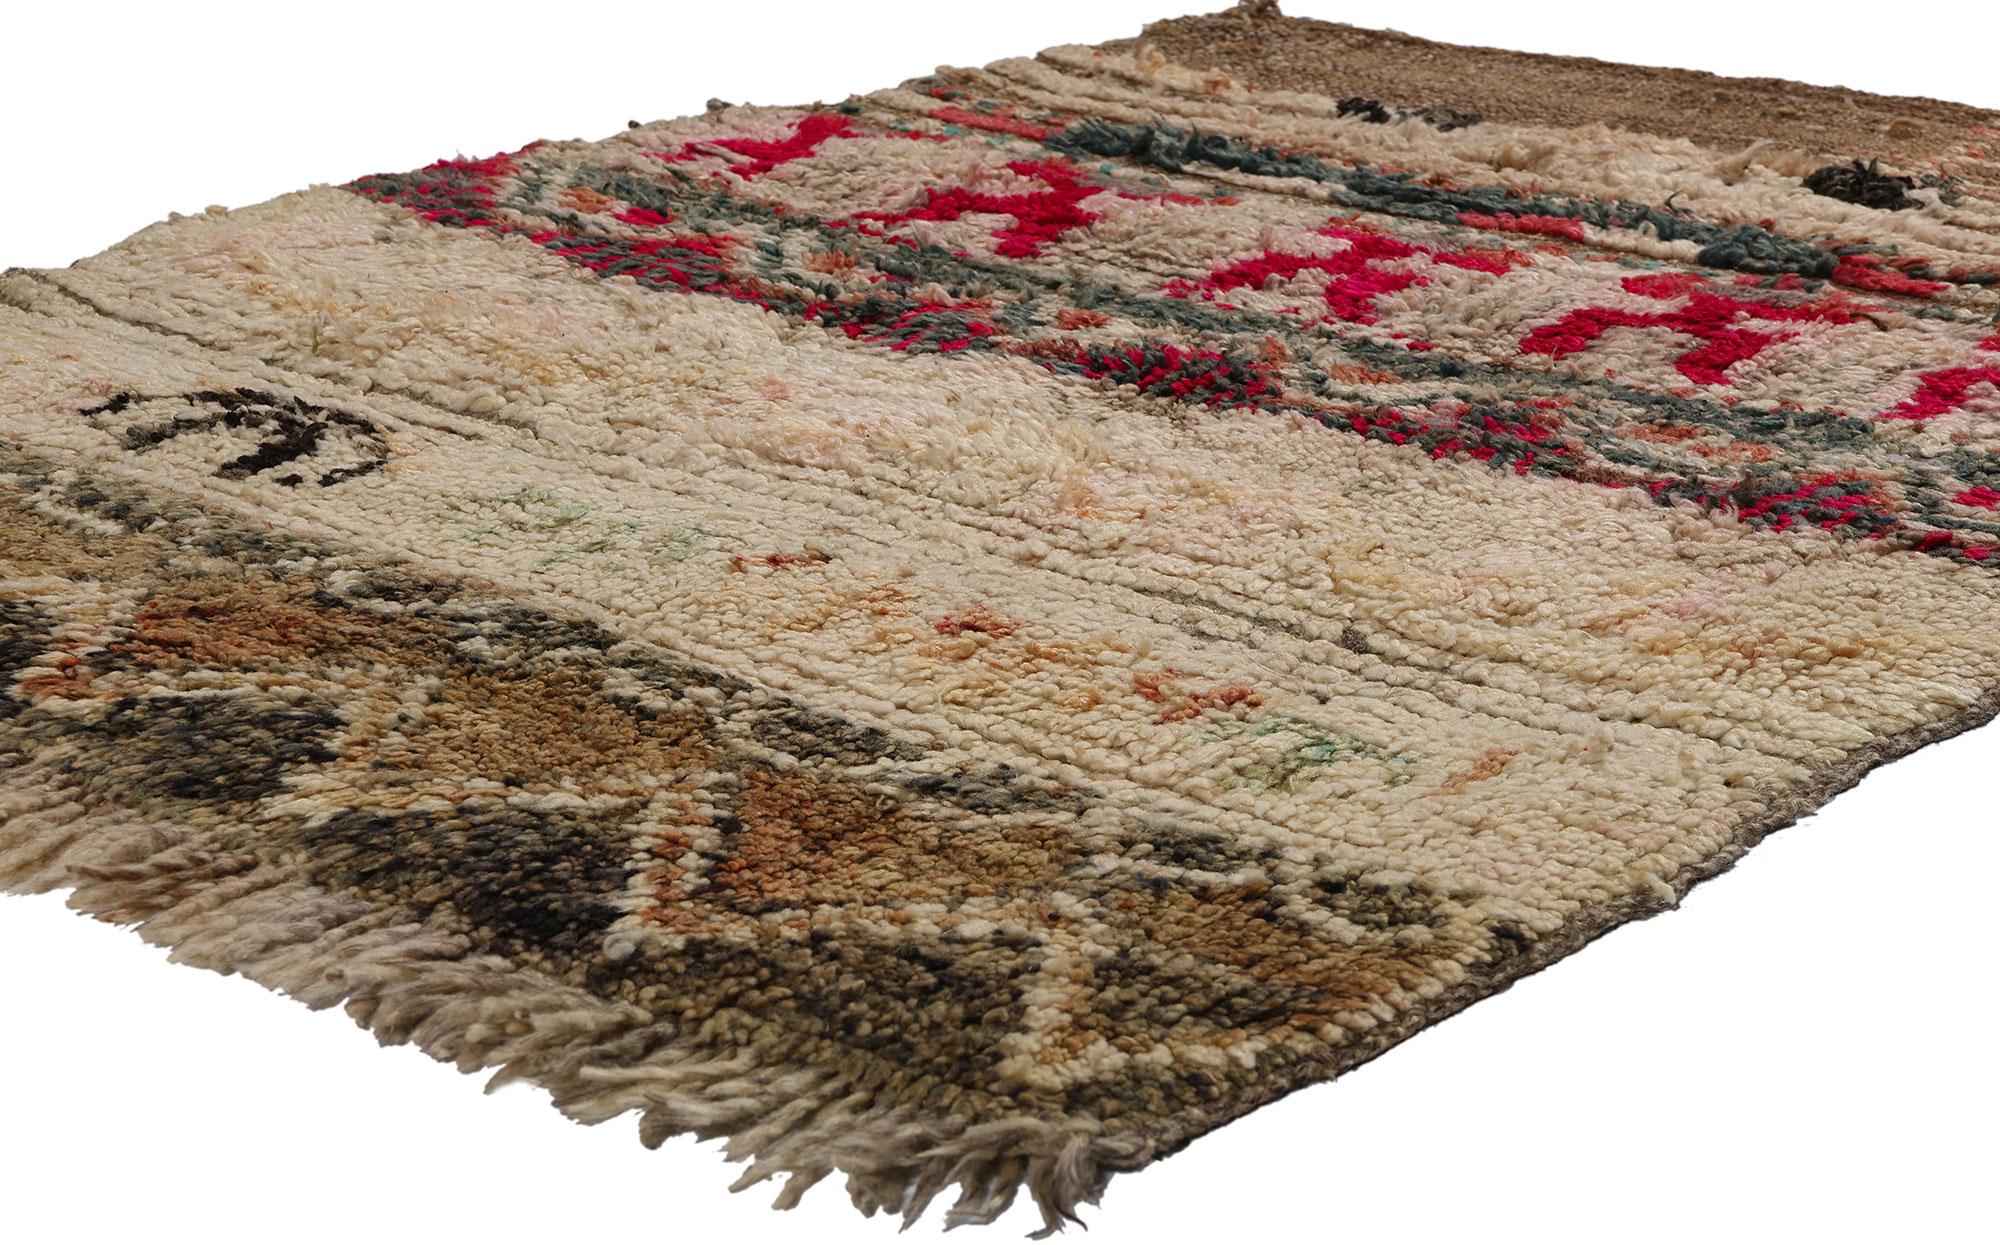 21833 Tapis marocain Boujad Vintage Brown, 03'04 x 04'05. Les tapis Boujad, chefs-d'œuvre tissés à la main dans la région du Boujad au Maroc, présentent des motifs vibrants tissés selon des traditions ancestrales par les tribus berbères, en